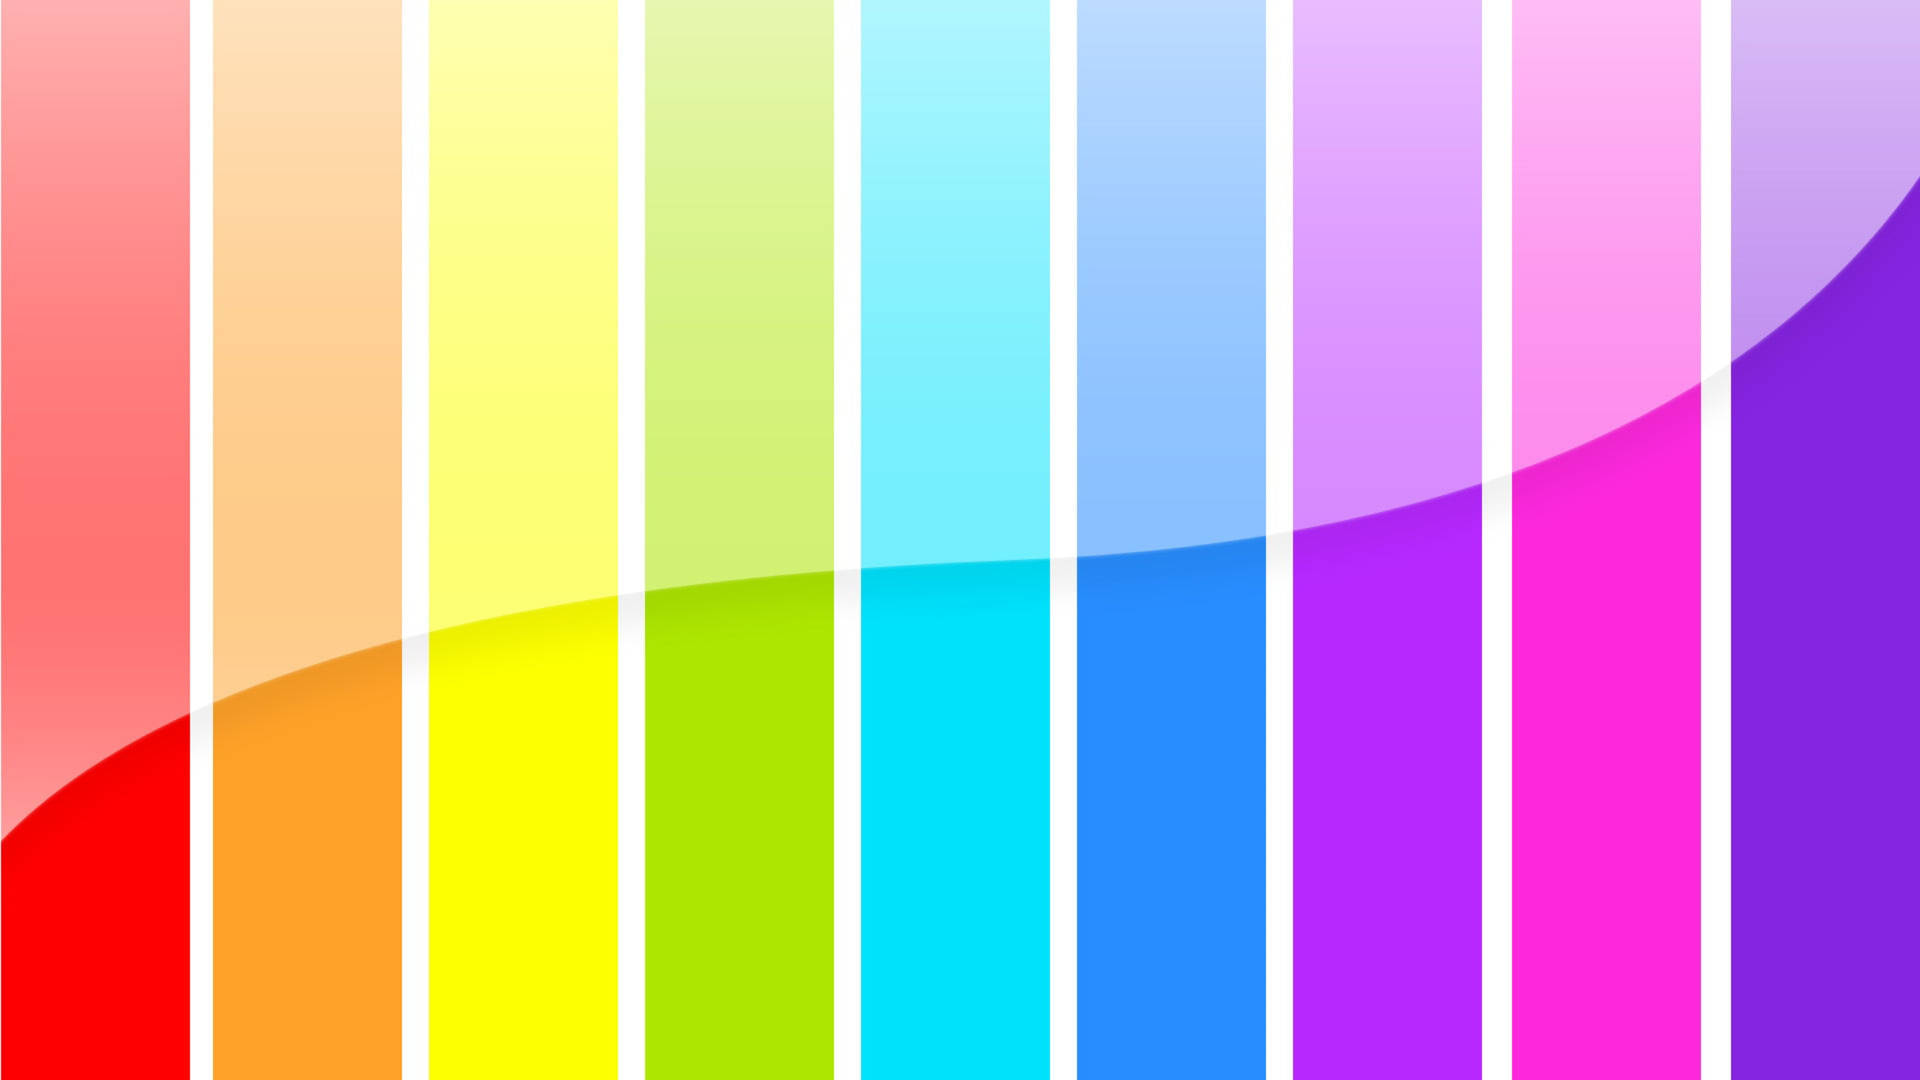 Rayasde Espectro Vertical Fondo de pantalla